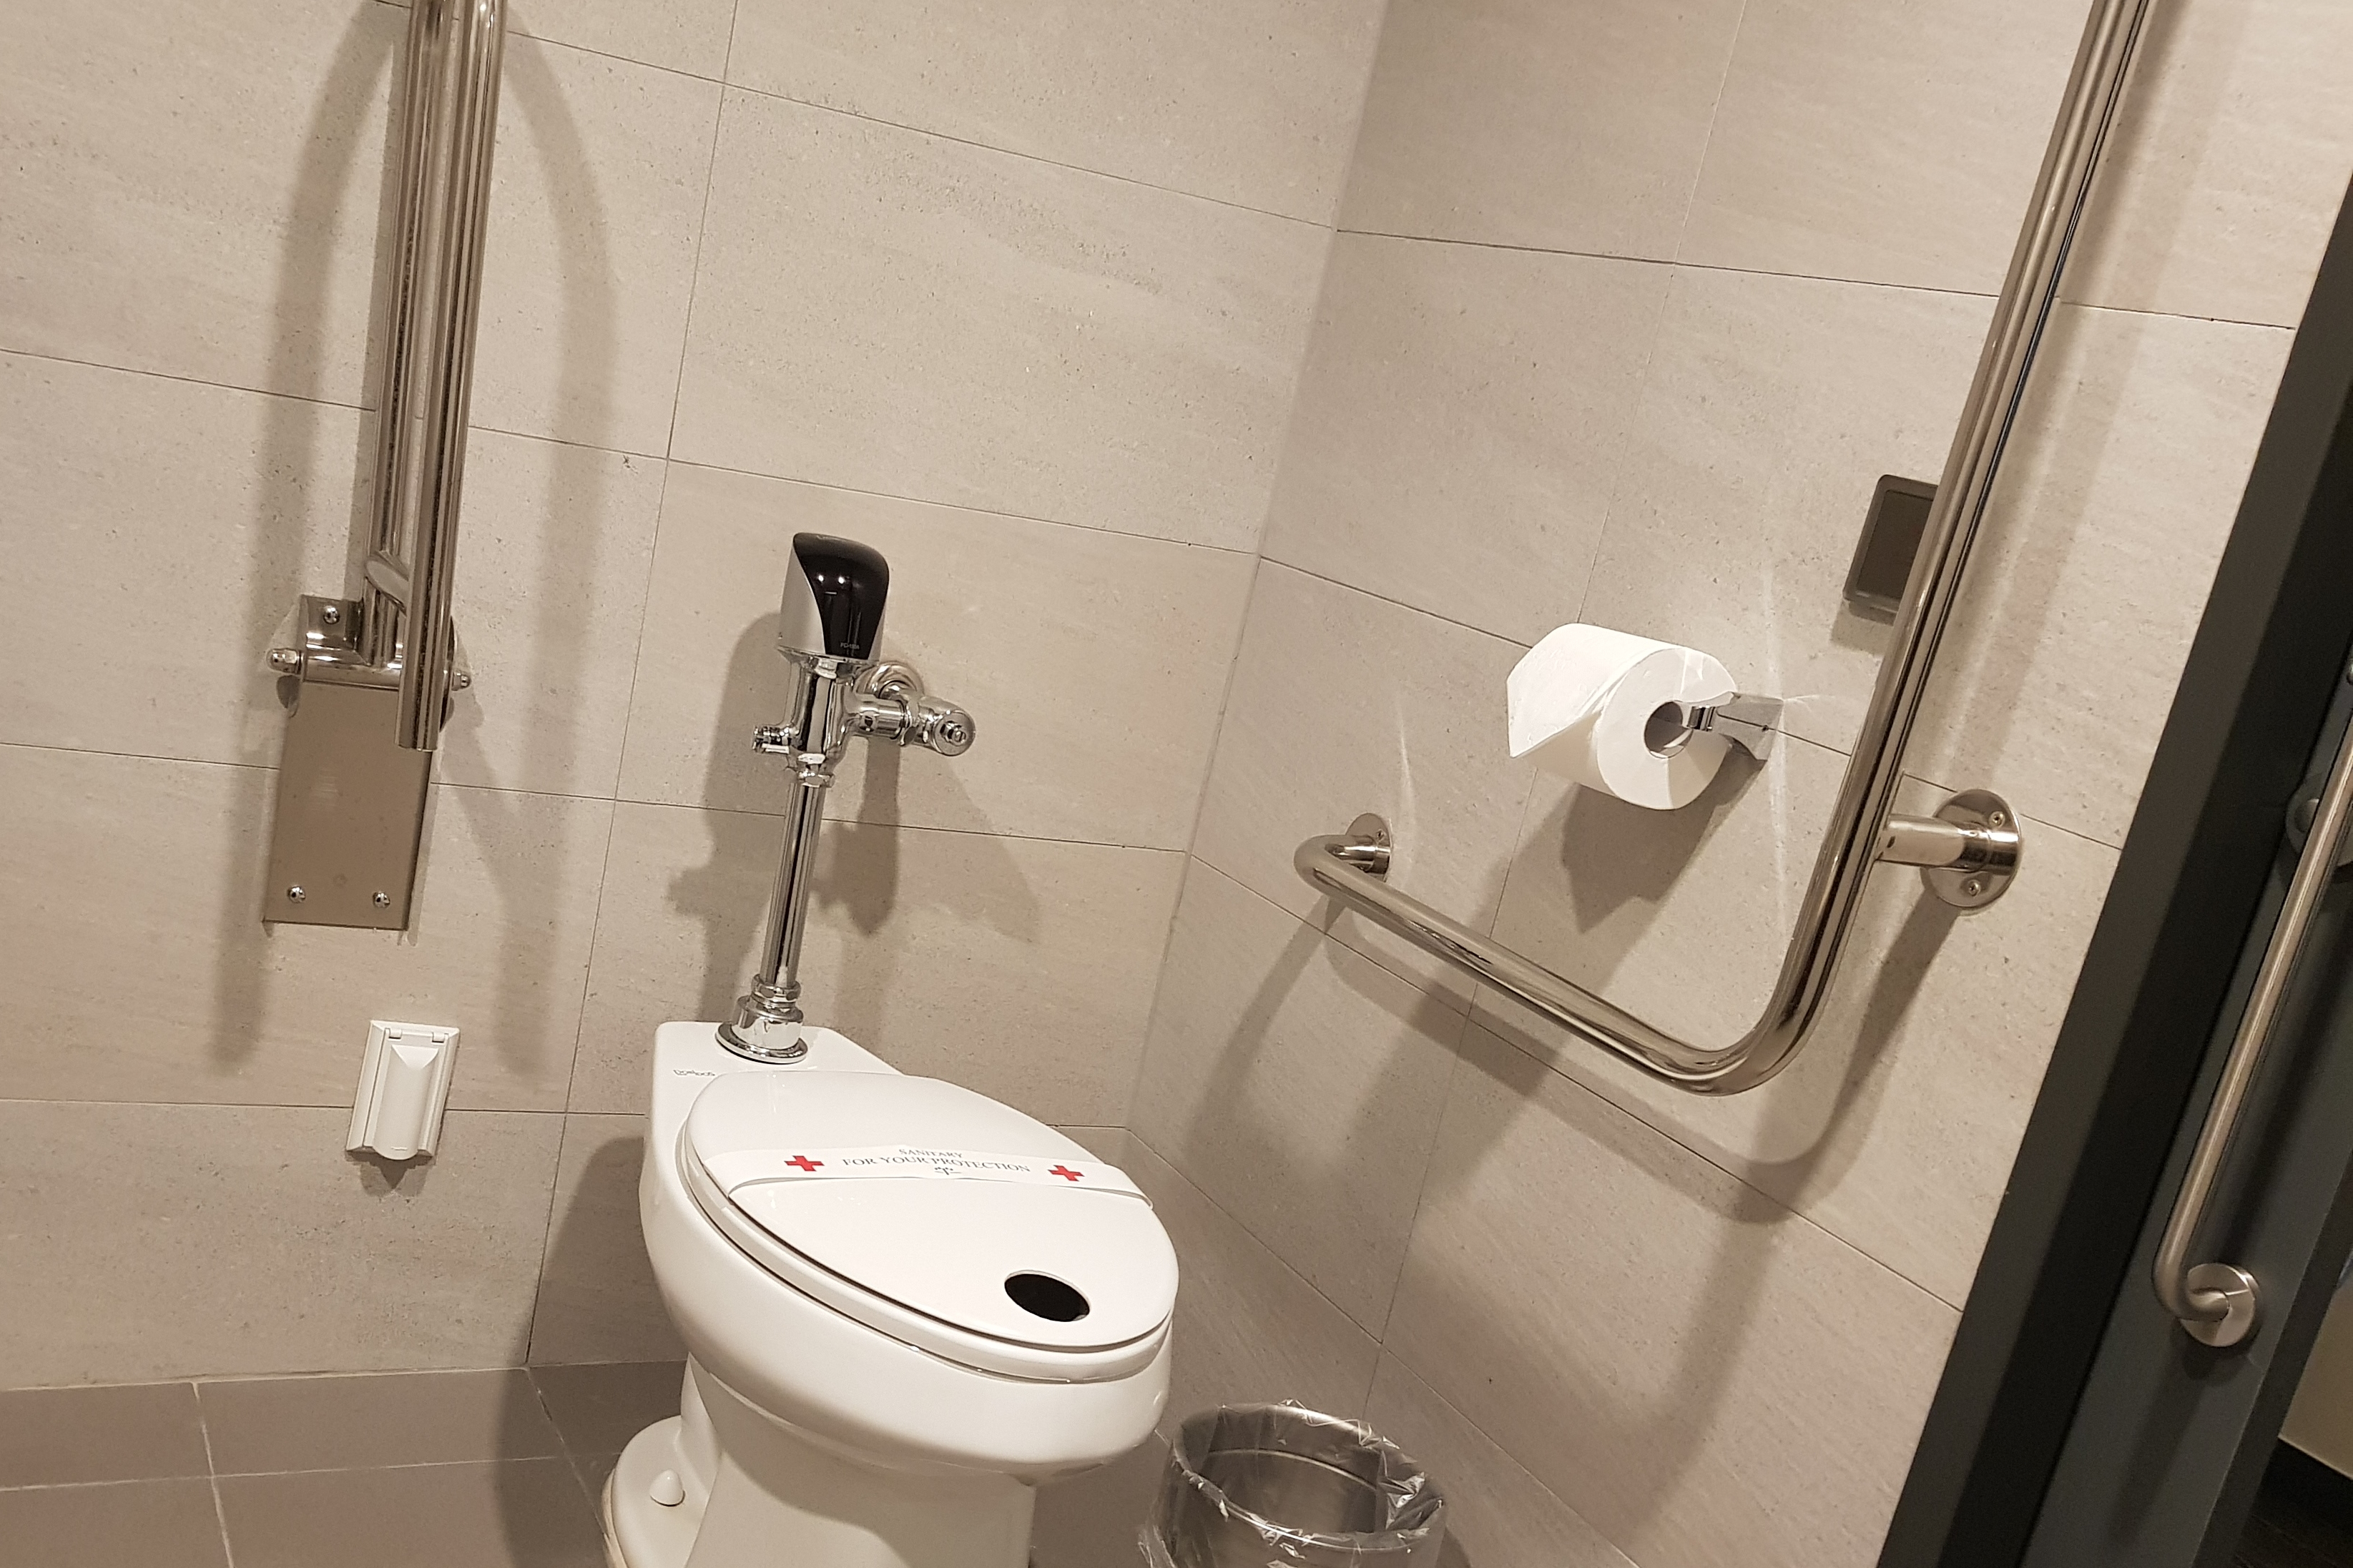 객실 화장실0 : 손잡이가 설치되어있는 호텔 토마스 명동 화장실 내부 전경